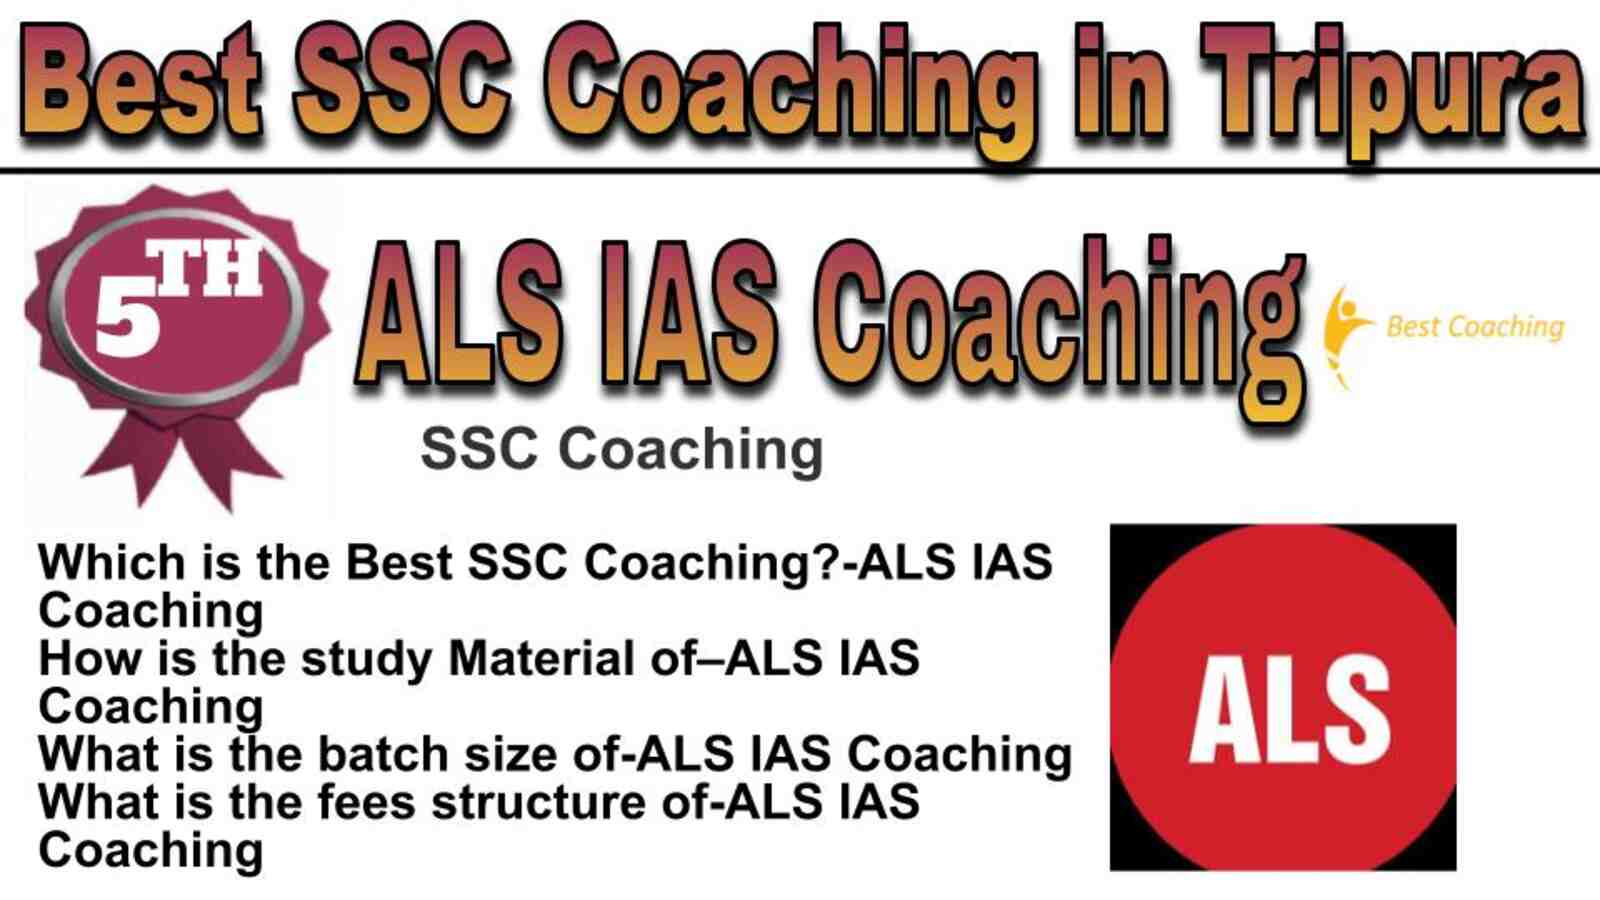 Rank 5 best SSC Coaching in Tripura